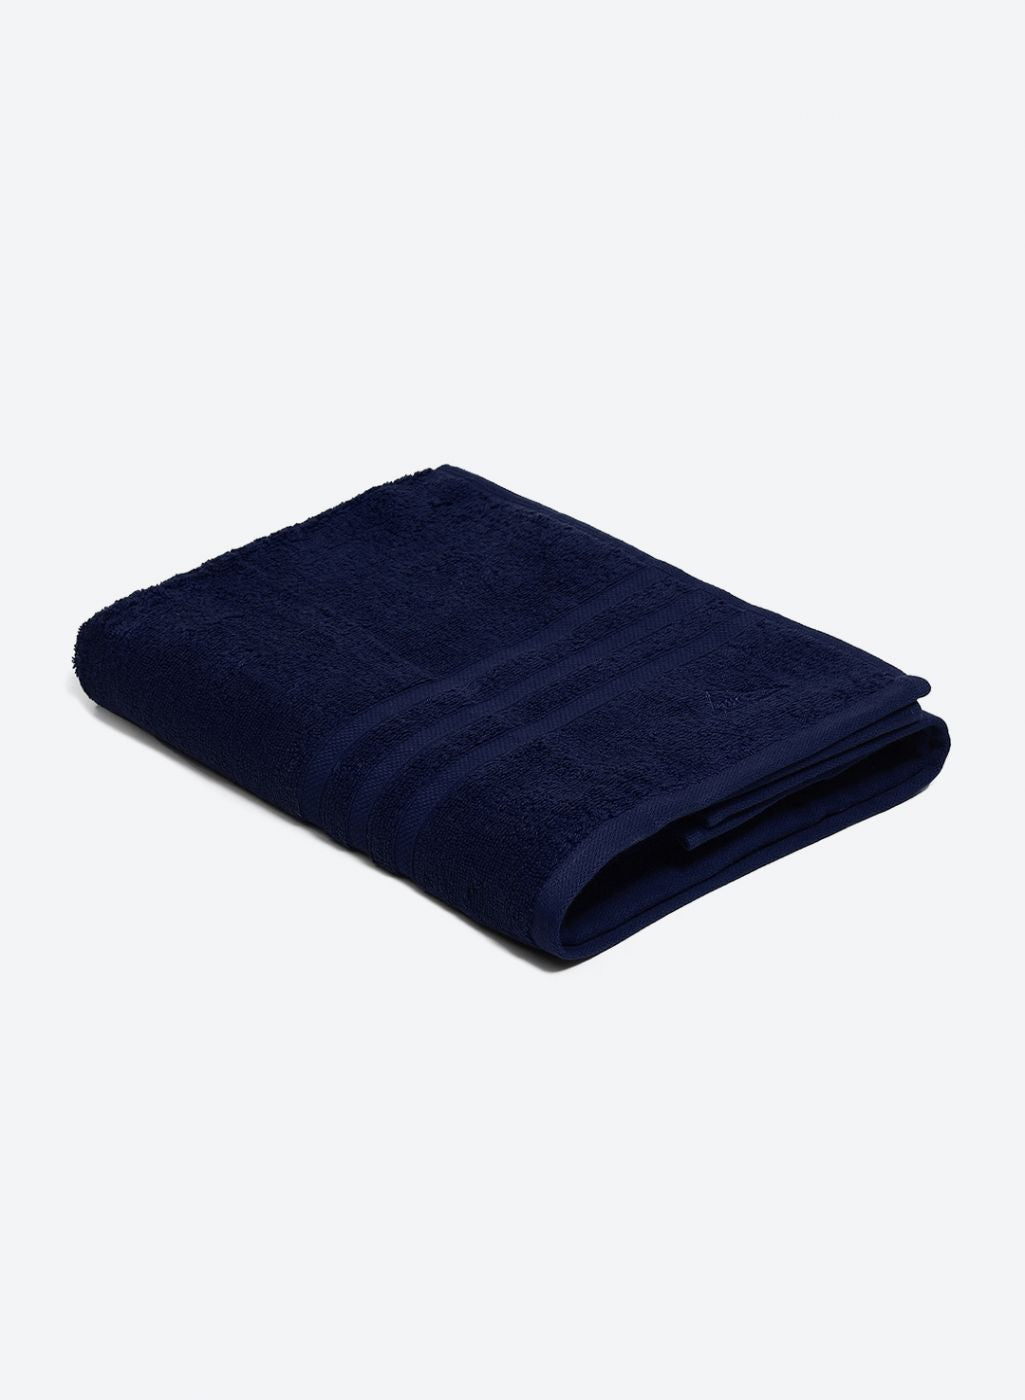 NAvy Blue Cotton 525 GSM Bath Towel